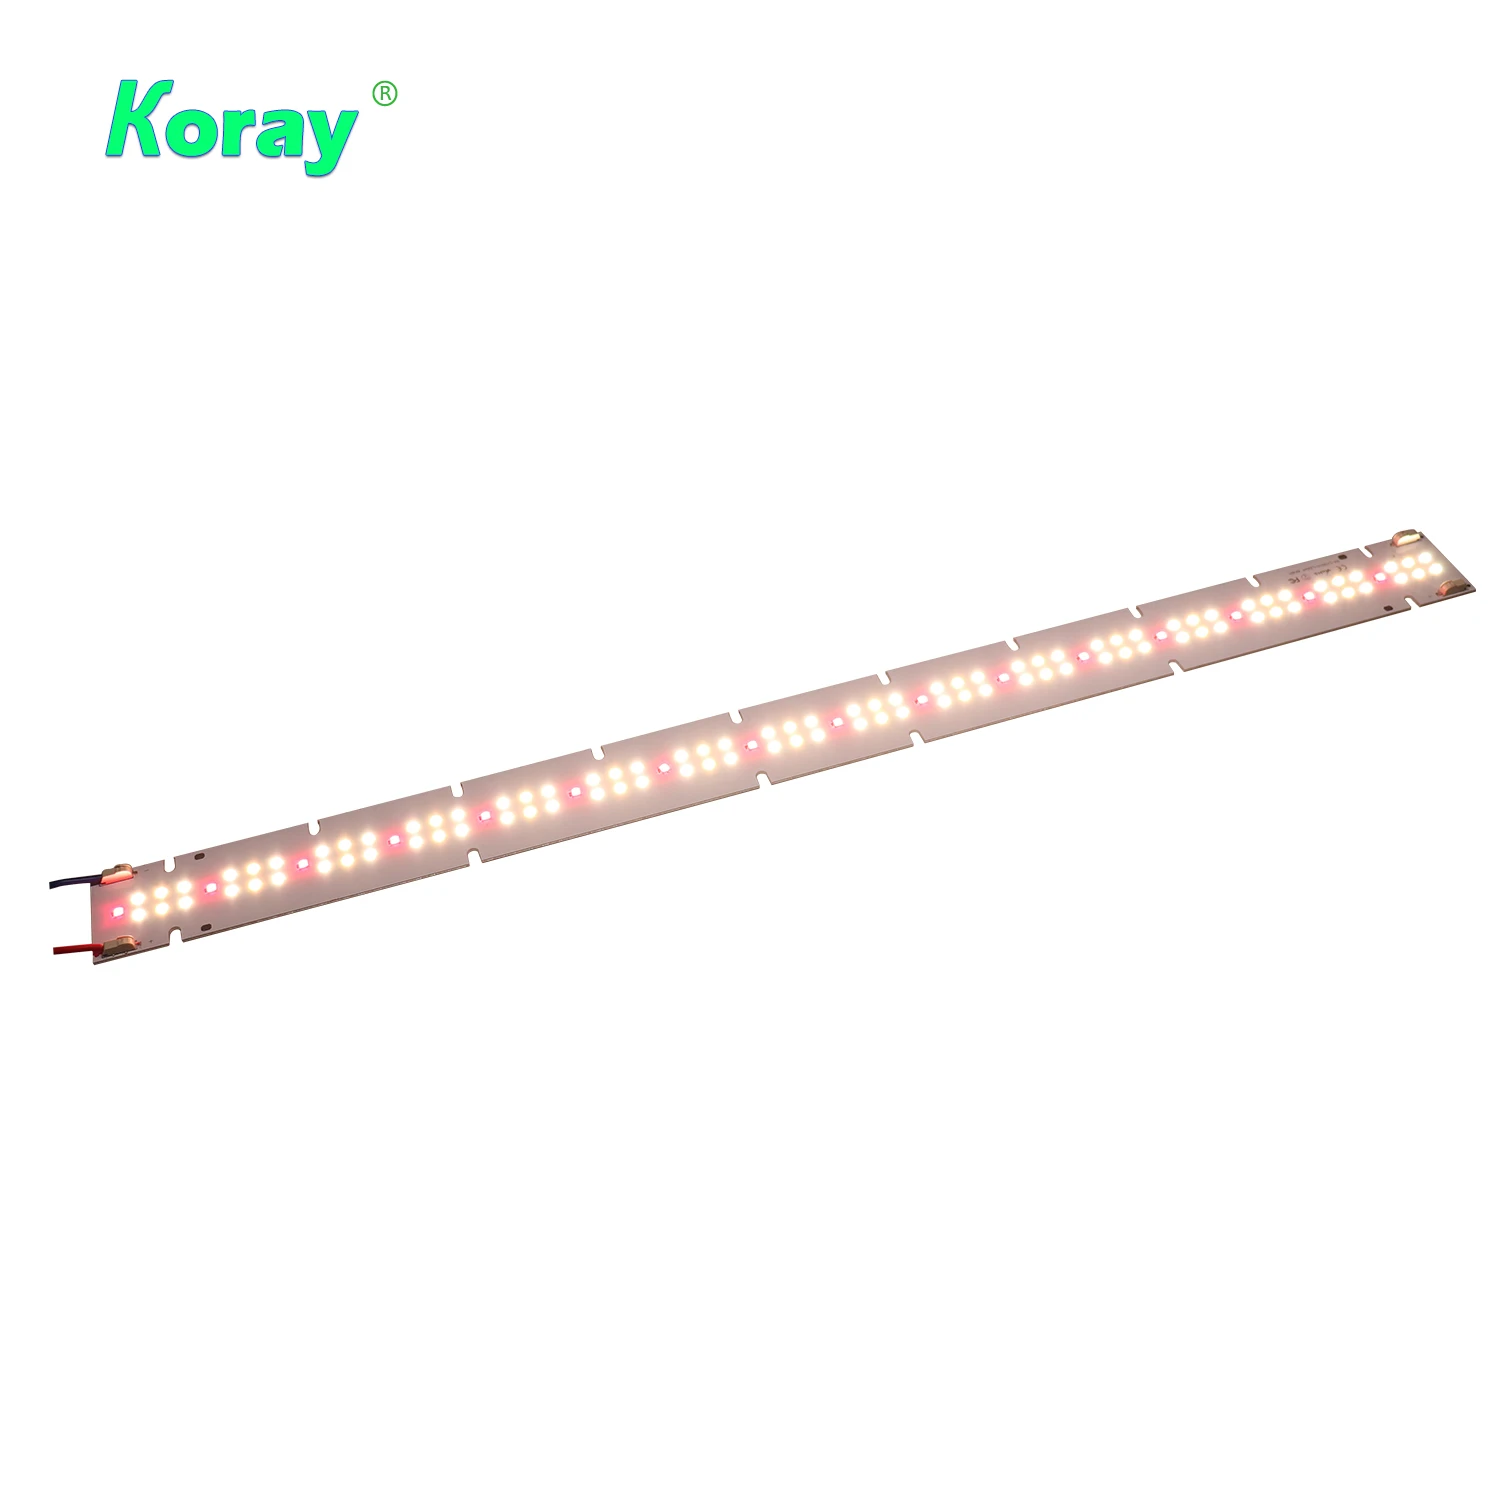 Koray qb288 v2 QB 65w wholesale led uvb grow light 48v lm301b/lm301h red 660nm for plants